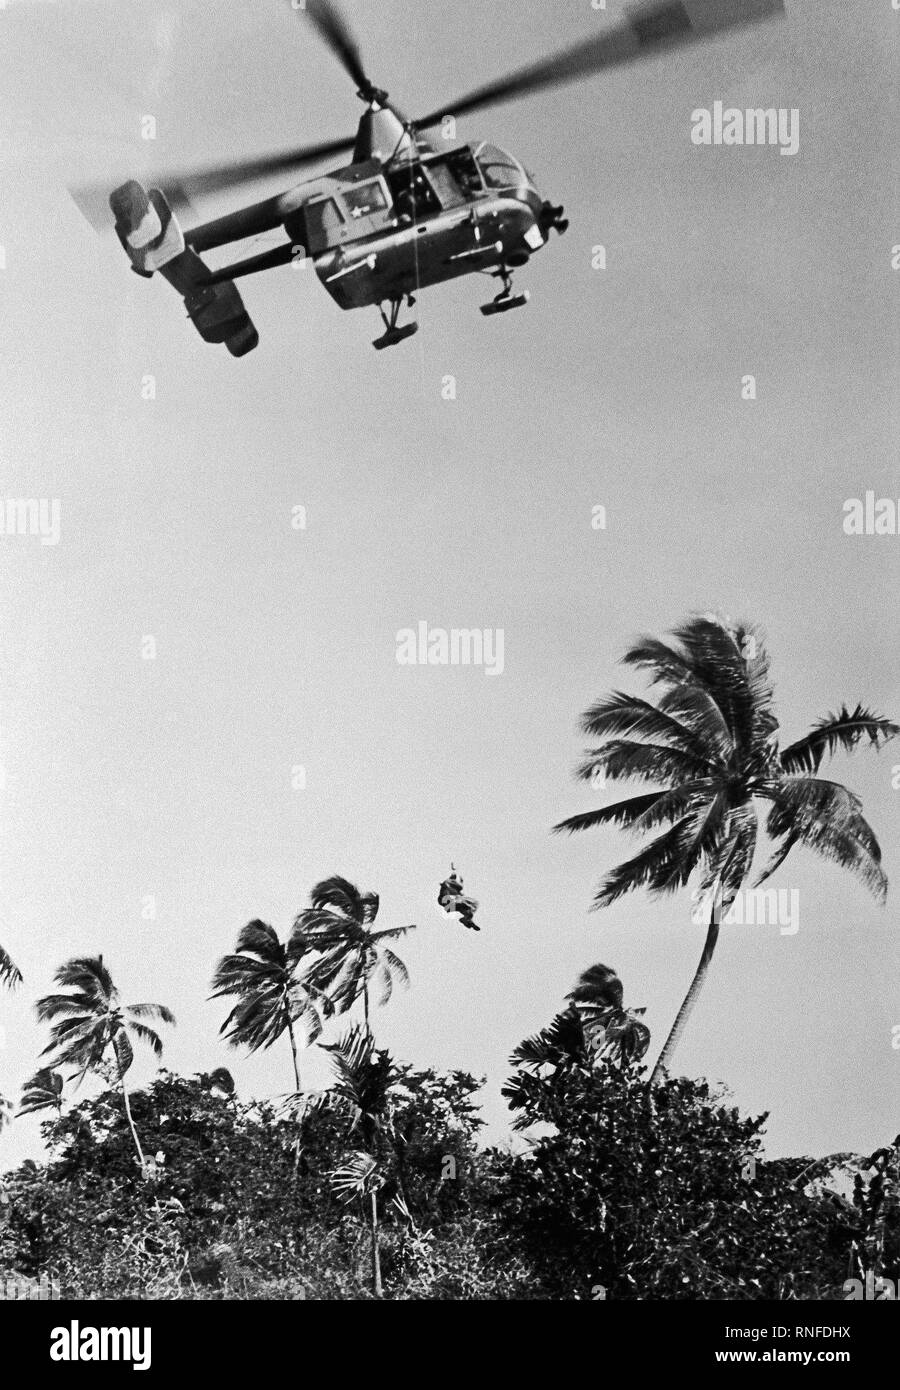 Ein Hubschrauber HH-43 Pedro (Huskie) wird verwendet, um einen abgestürzten Flieger aus einem feindlichen befallenen Dschungel in Südost-Asien zu retten. Stockfoto